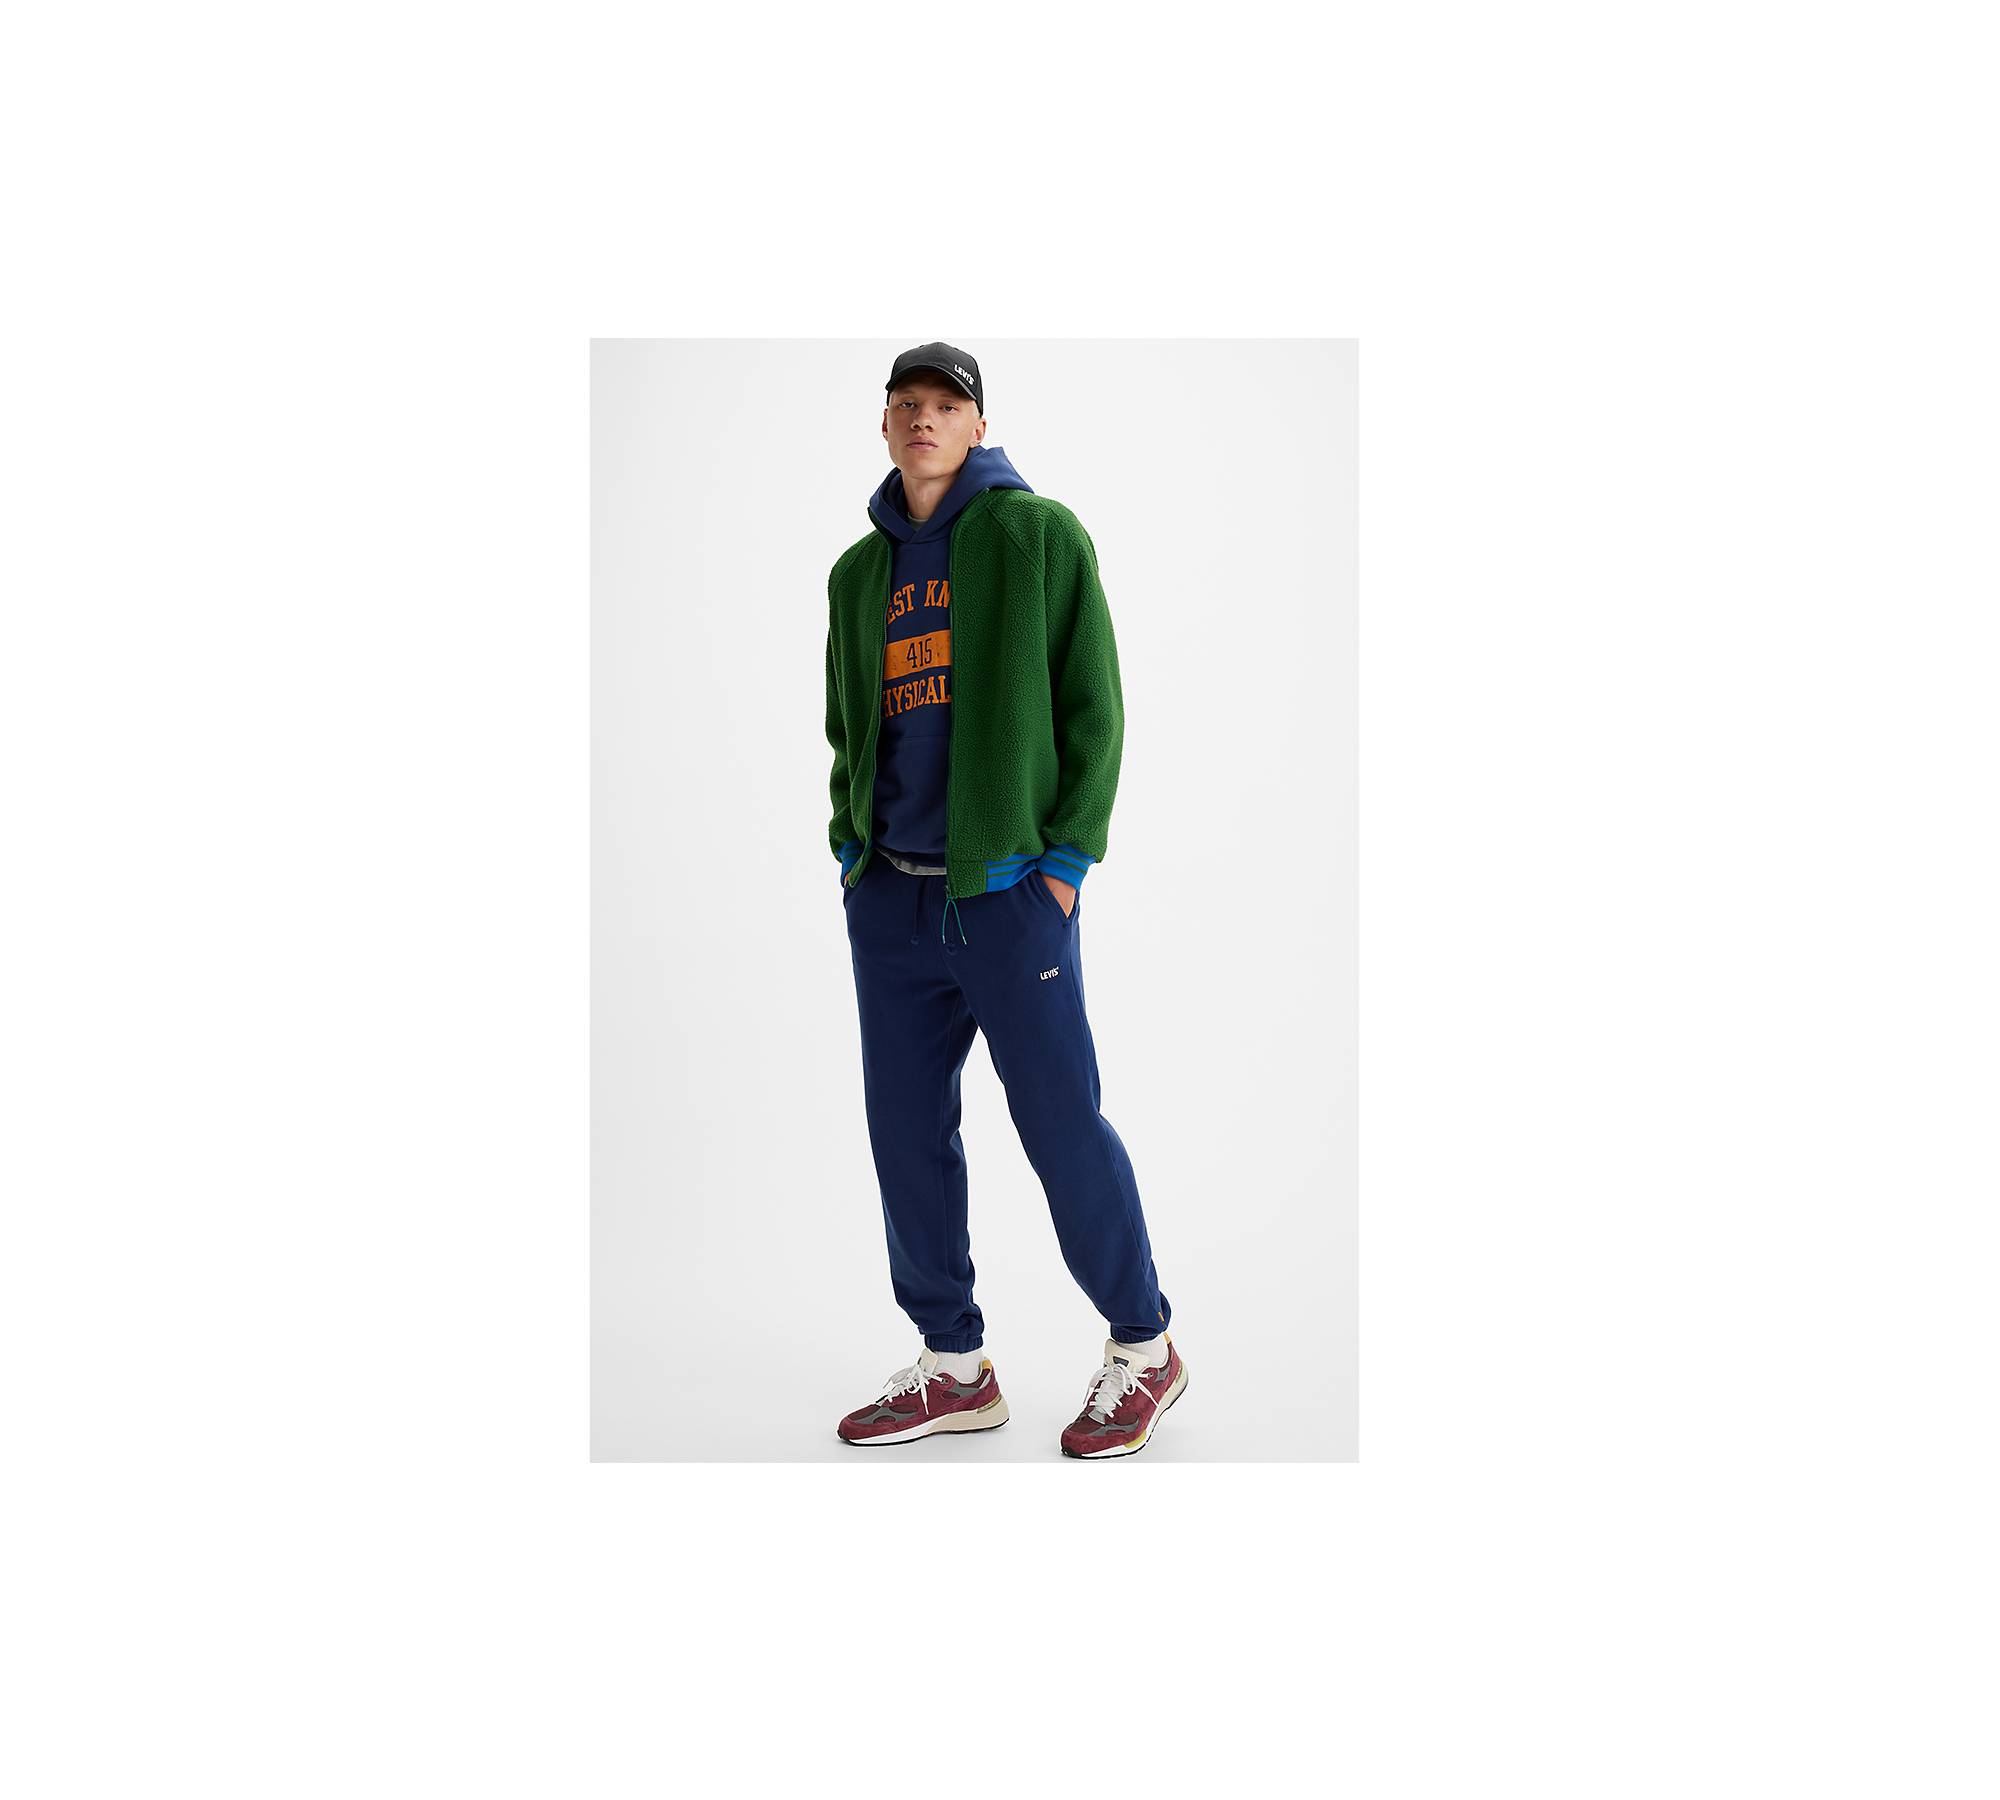 Fila Big and Tall Sweatpants for Men – Men’s Fleece Sweatpants Joggers :  : Clothing, Shoes & Accessories